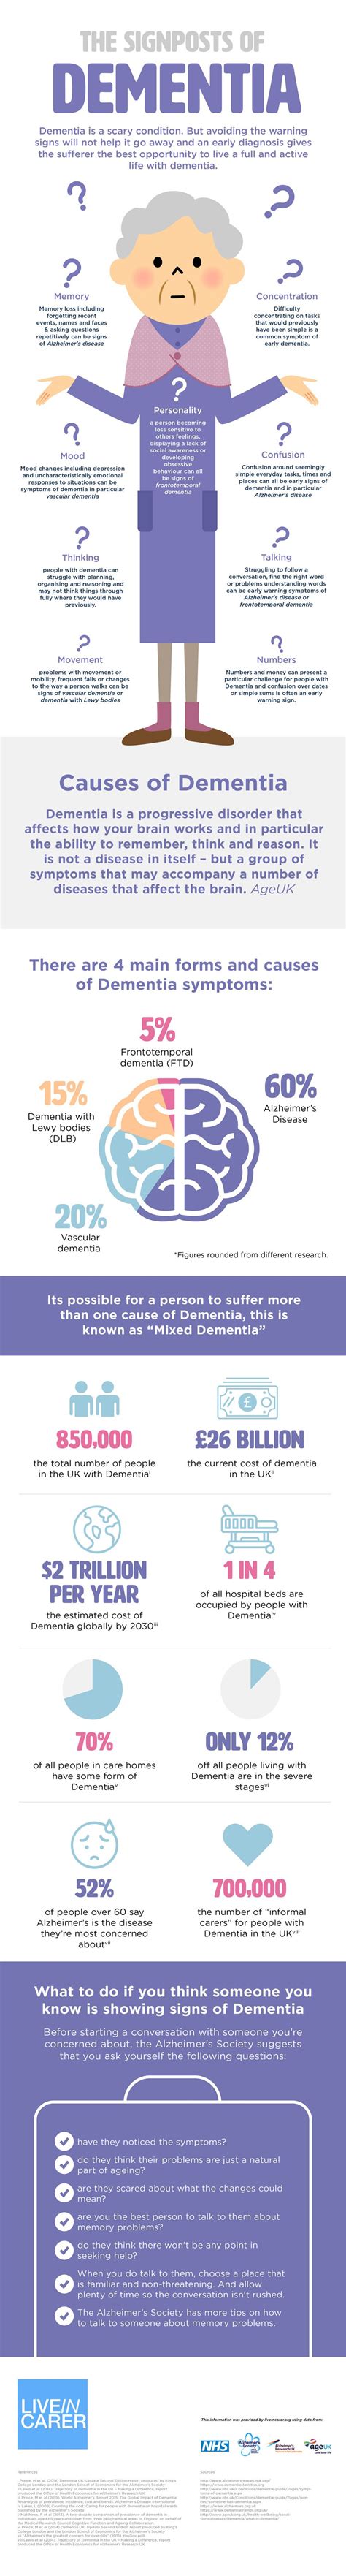 signs symptoms  dementia infographic understanding dementia